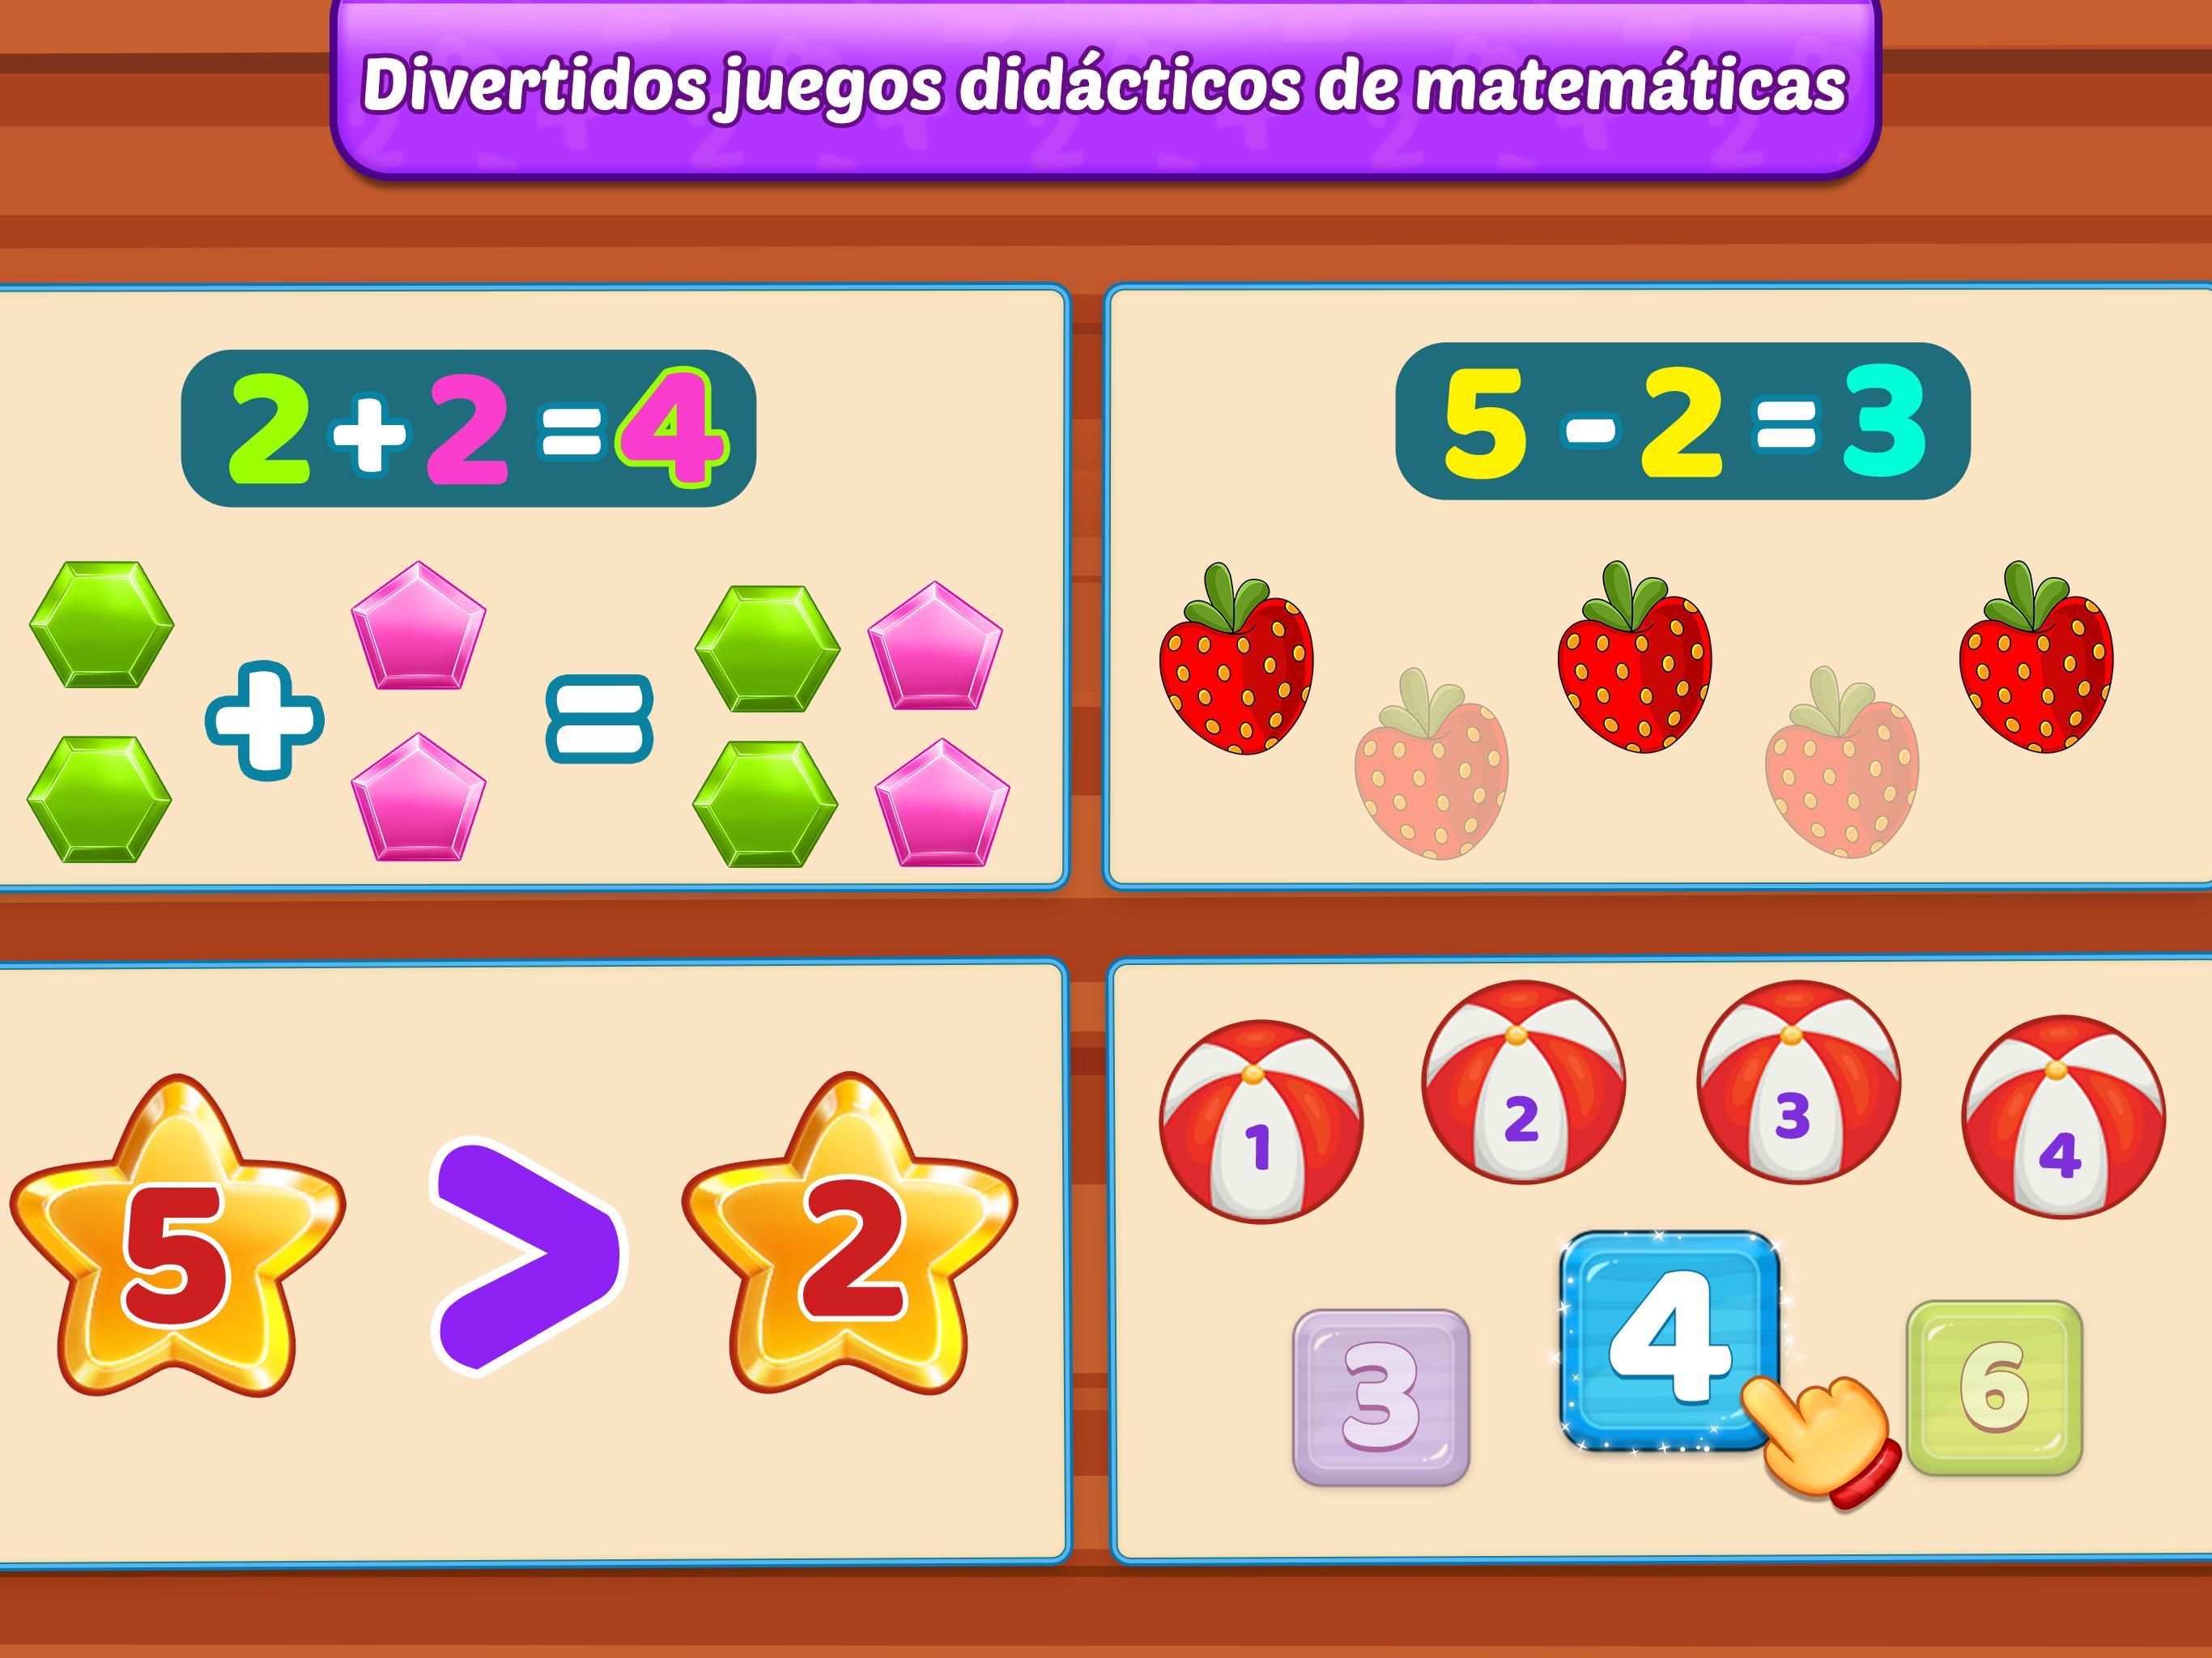 Juegos de matemáticas para niños: sumas y restas for Android - APK Download